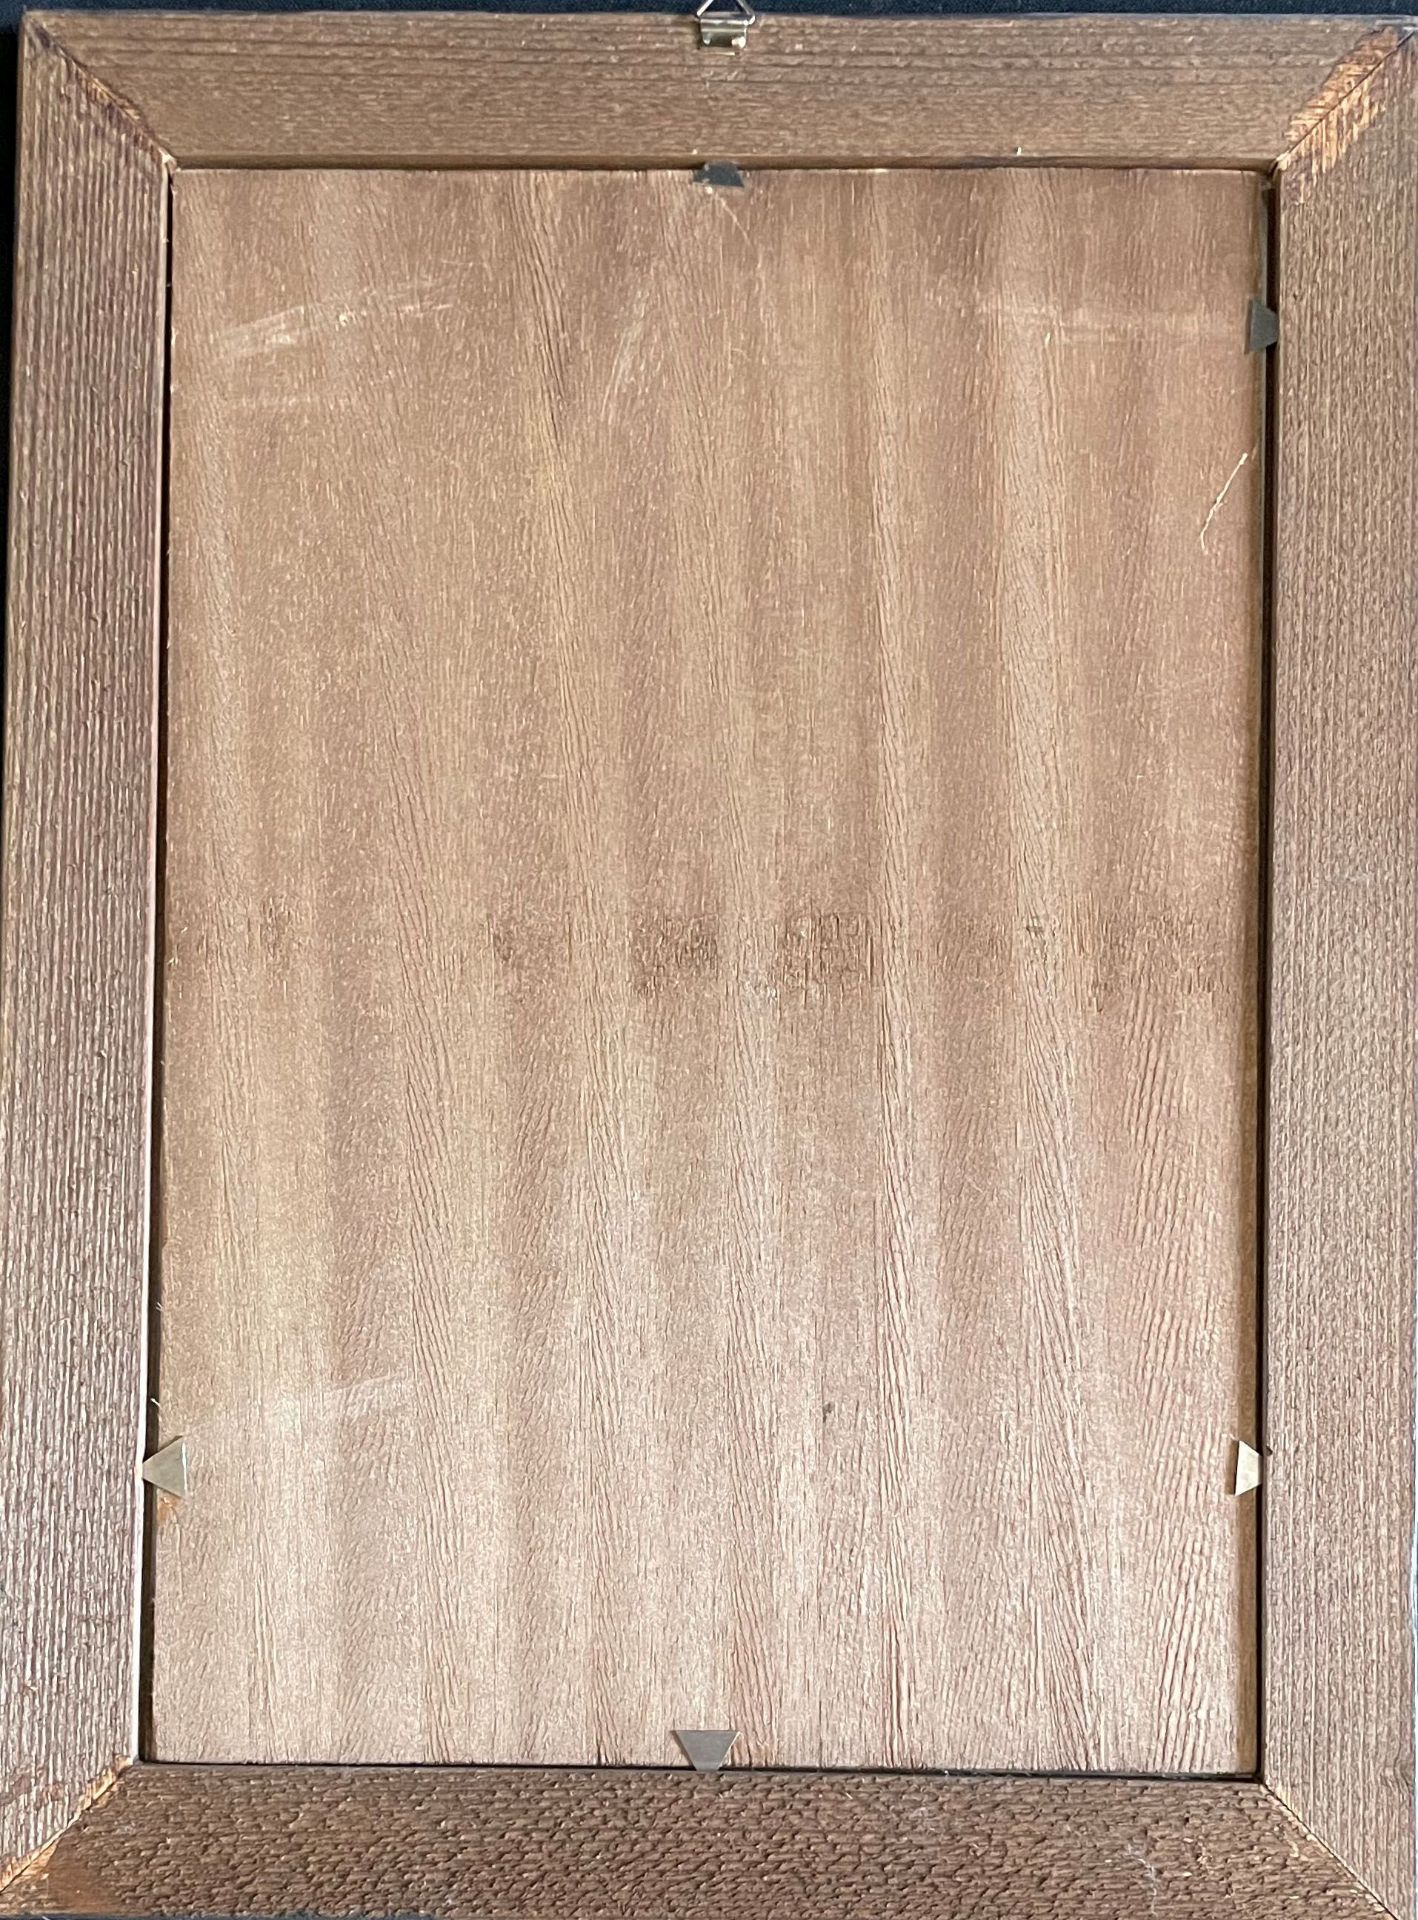 Hinterglasbild, alpenländisch, 19. Jh., Heiliger mit Stier und Schaf, 31,5 x 21,5 cm, Altersspuren - Image 2 of 2